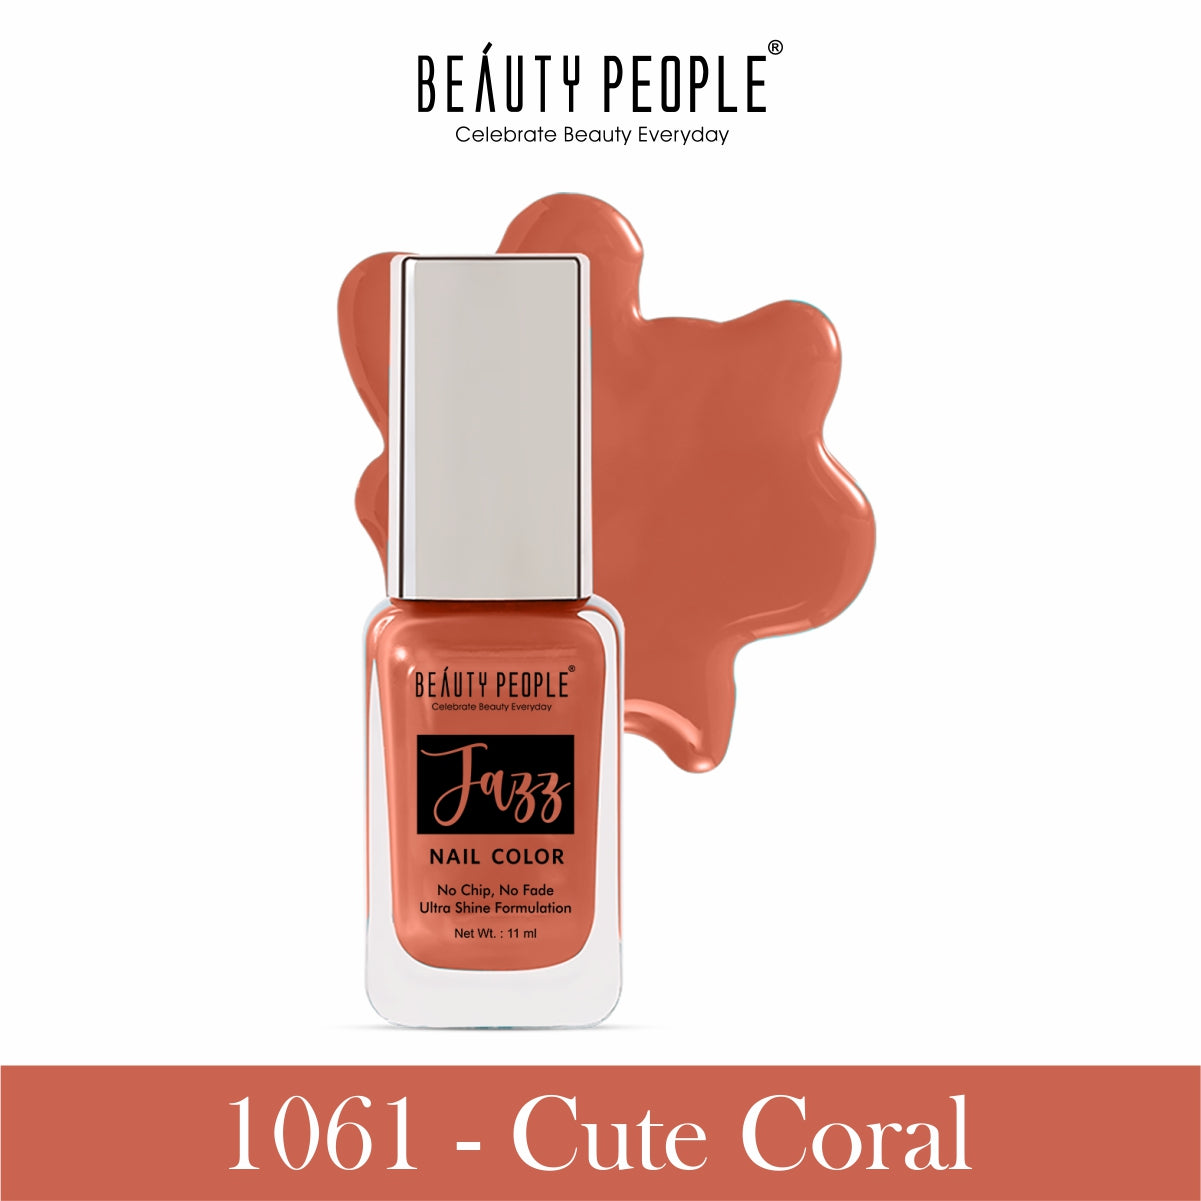 1061-cute-coral